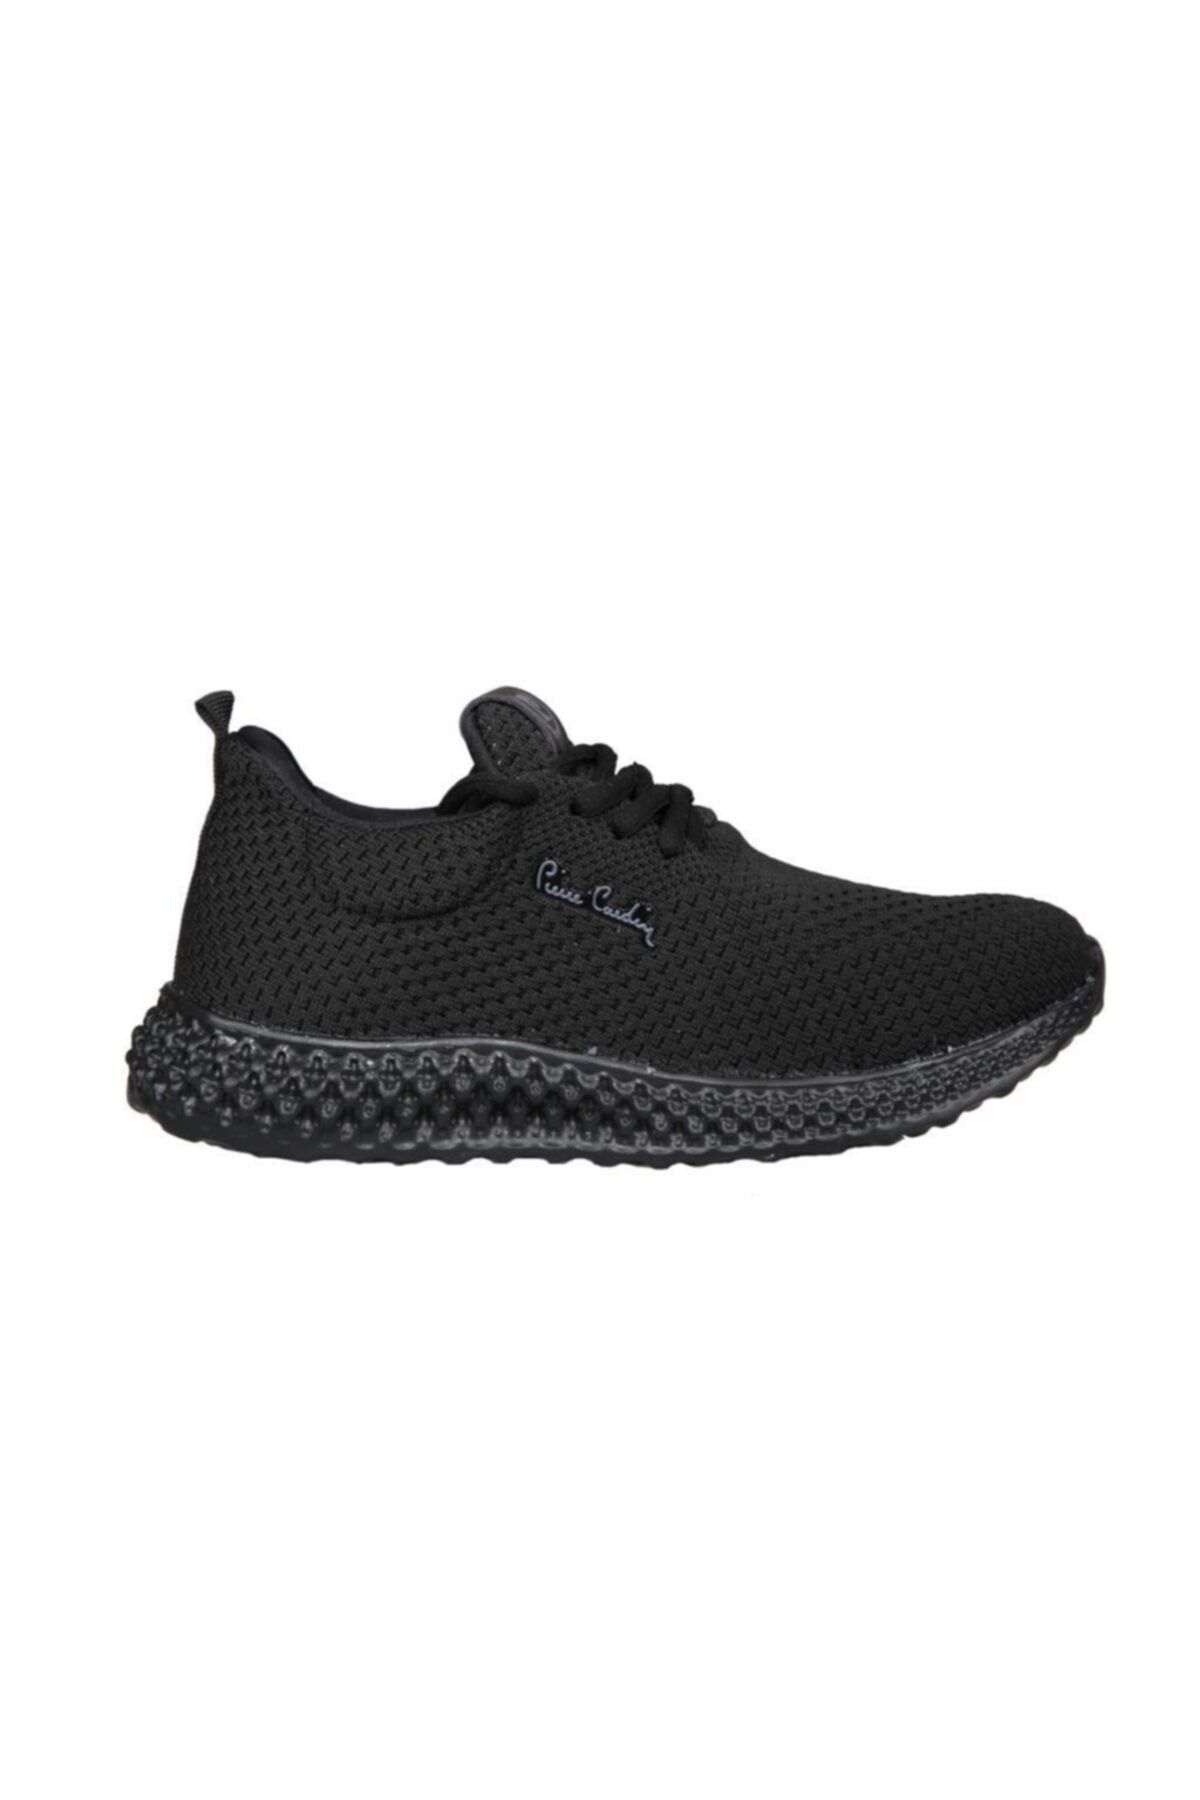 Pierre Cardin Unisex Siyah Sneakers